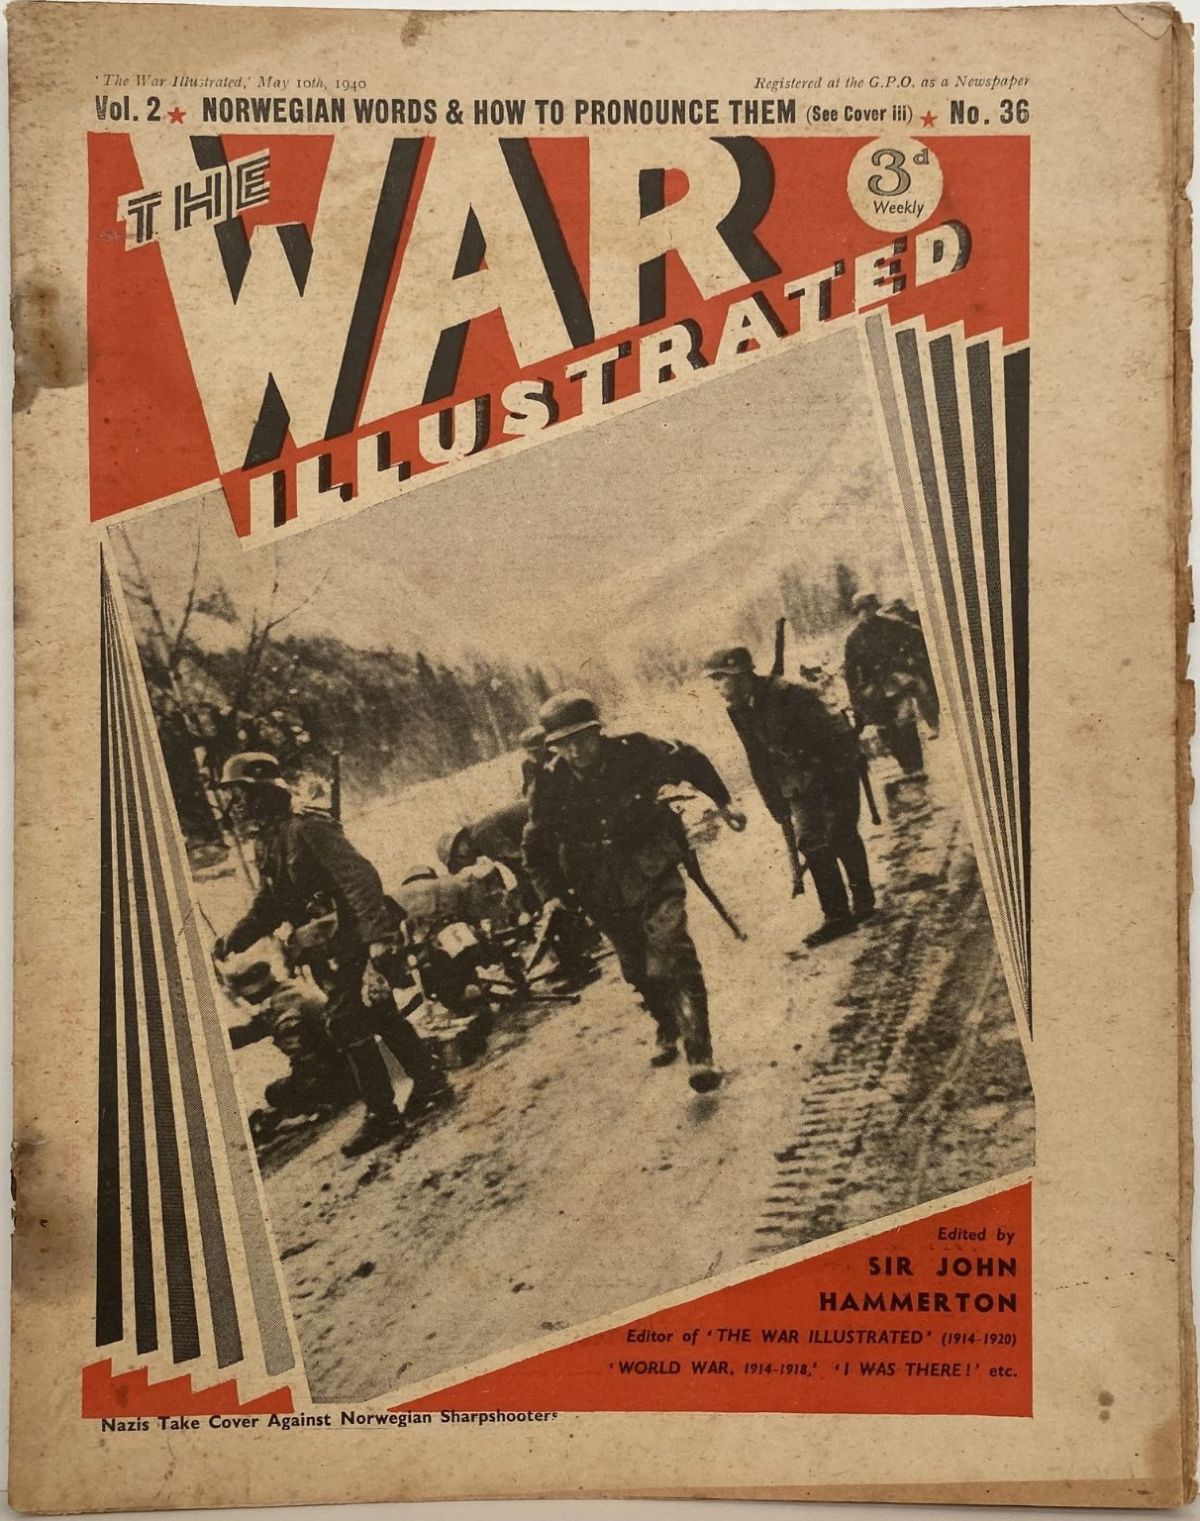 THE WAR ILLUSTRATED - Vol 2, No 36, 10th May 1940